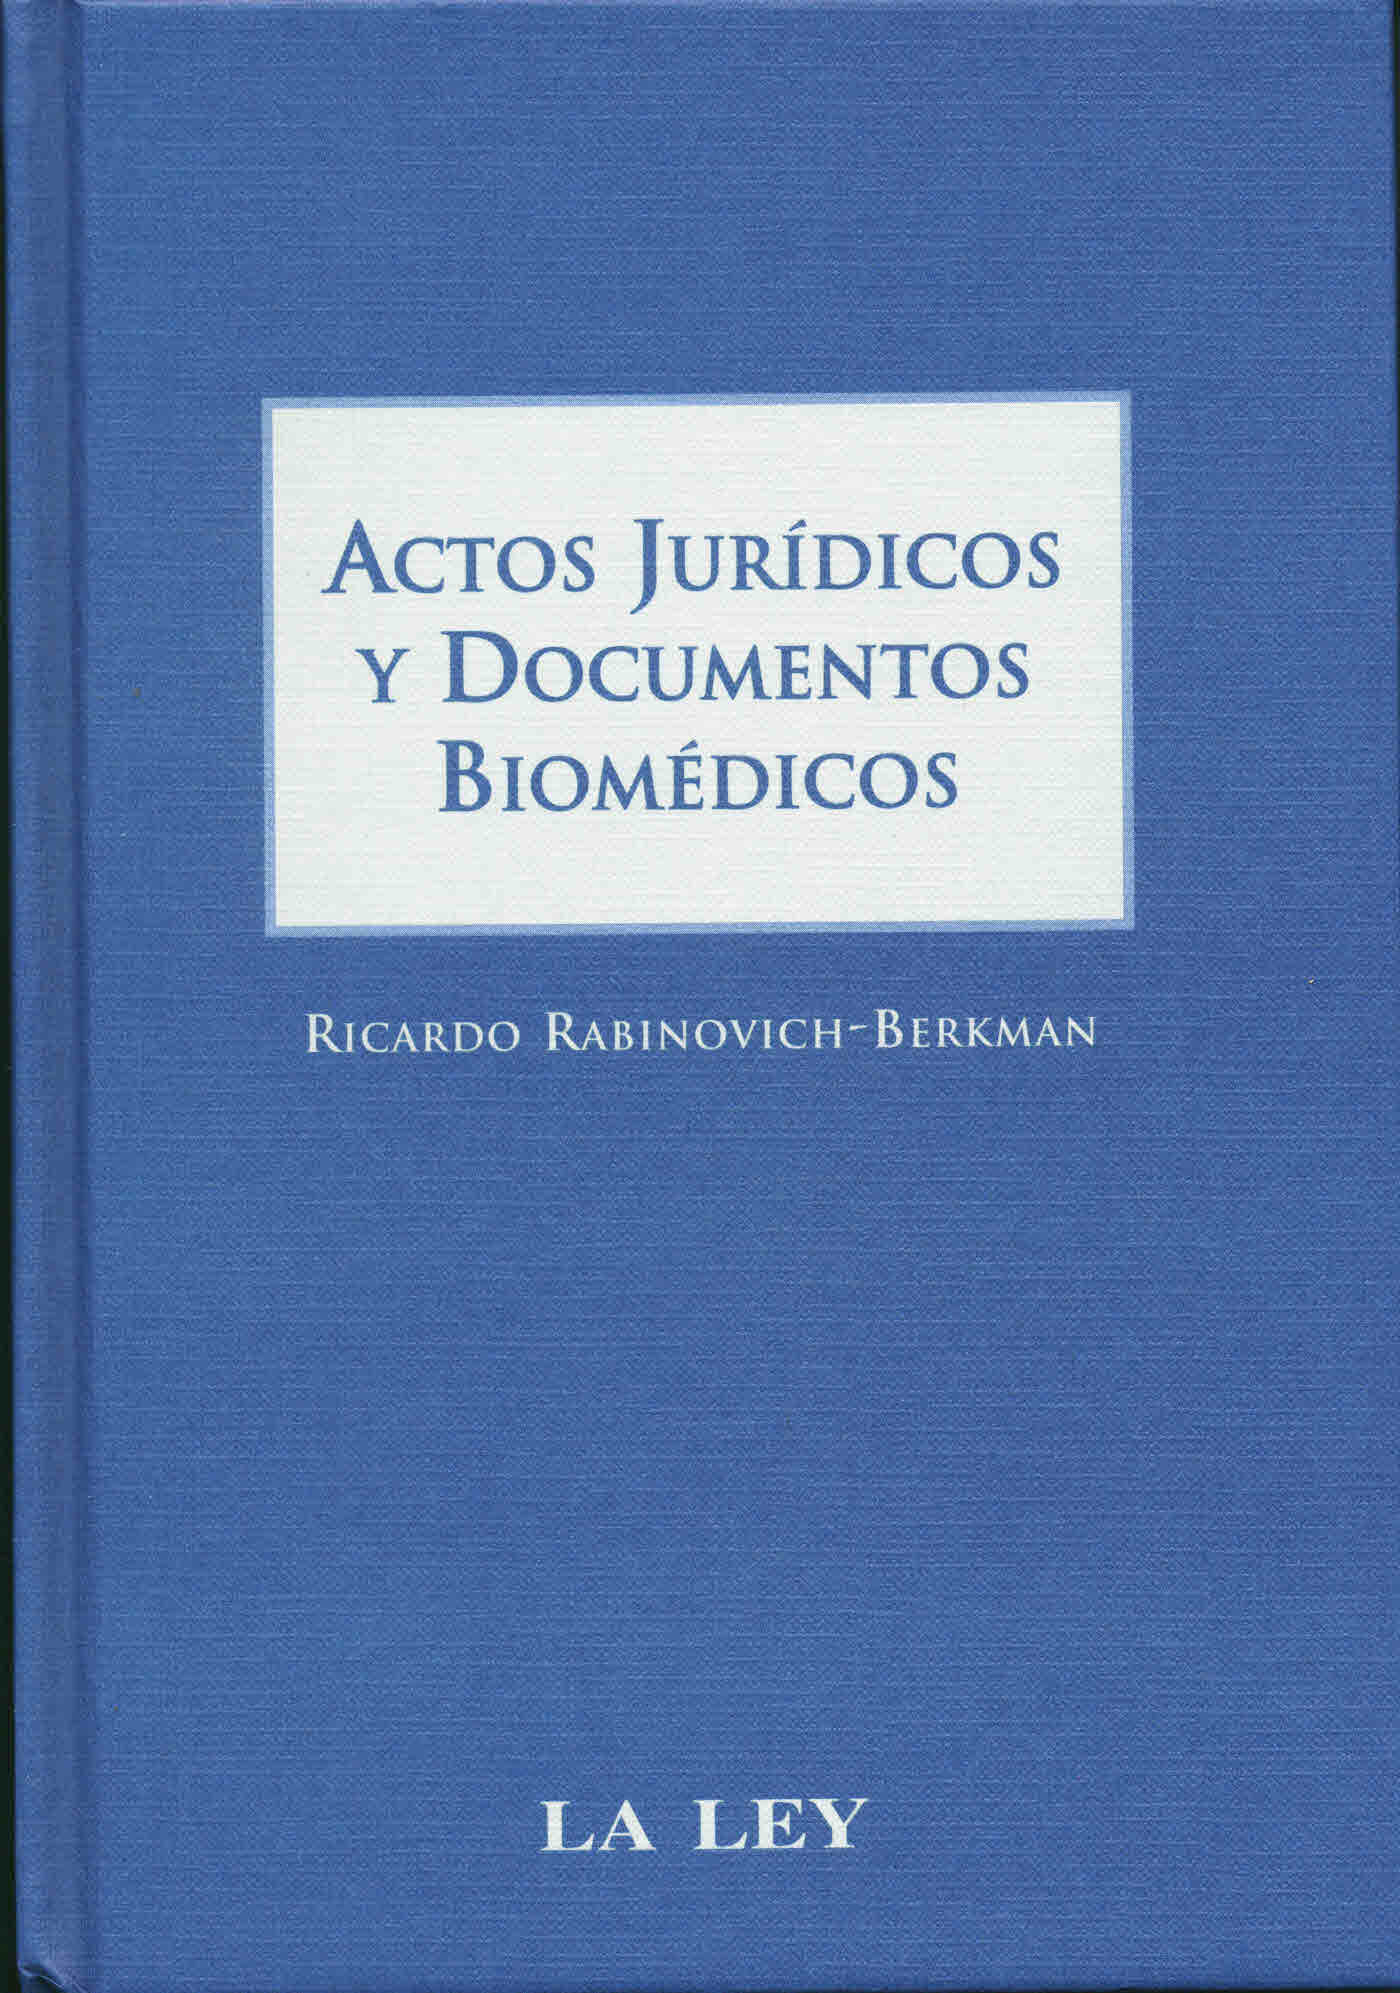 Actos jurídicos y documentos biomédicos